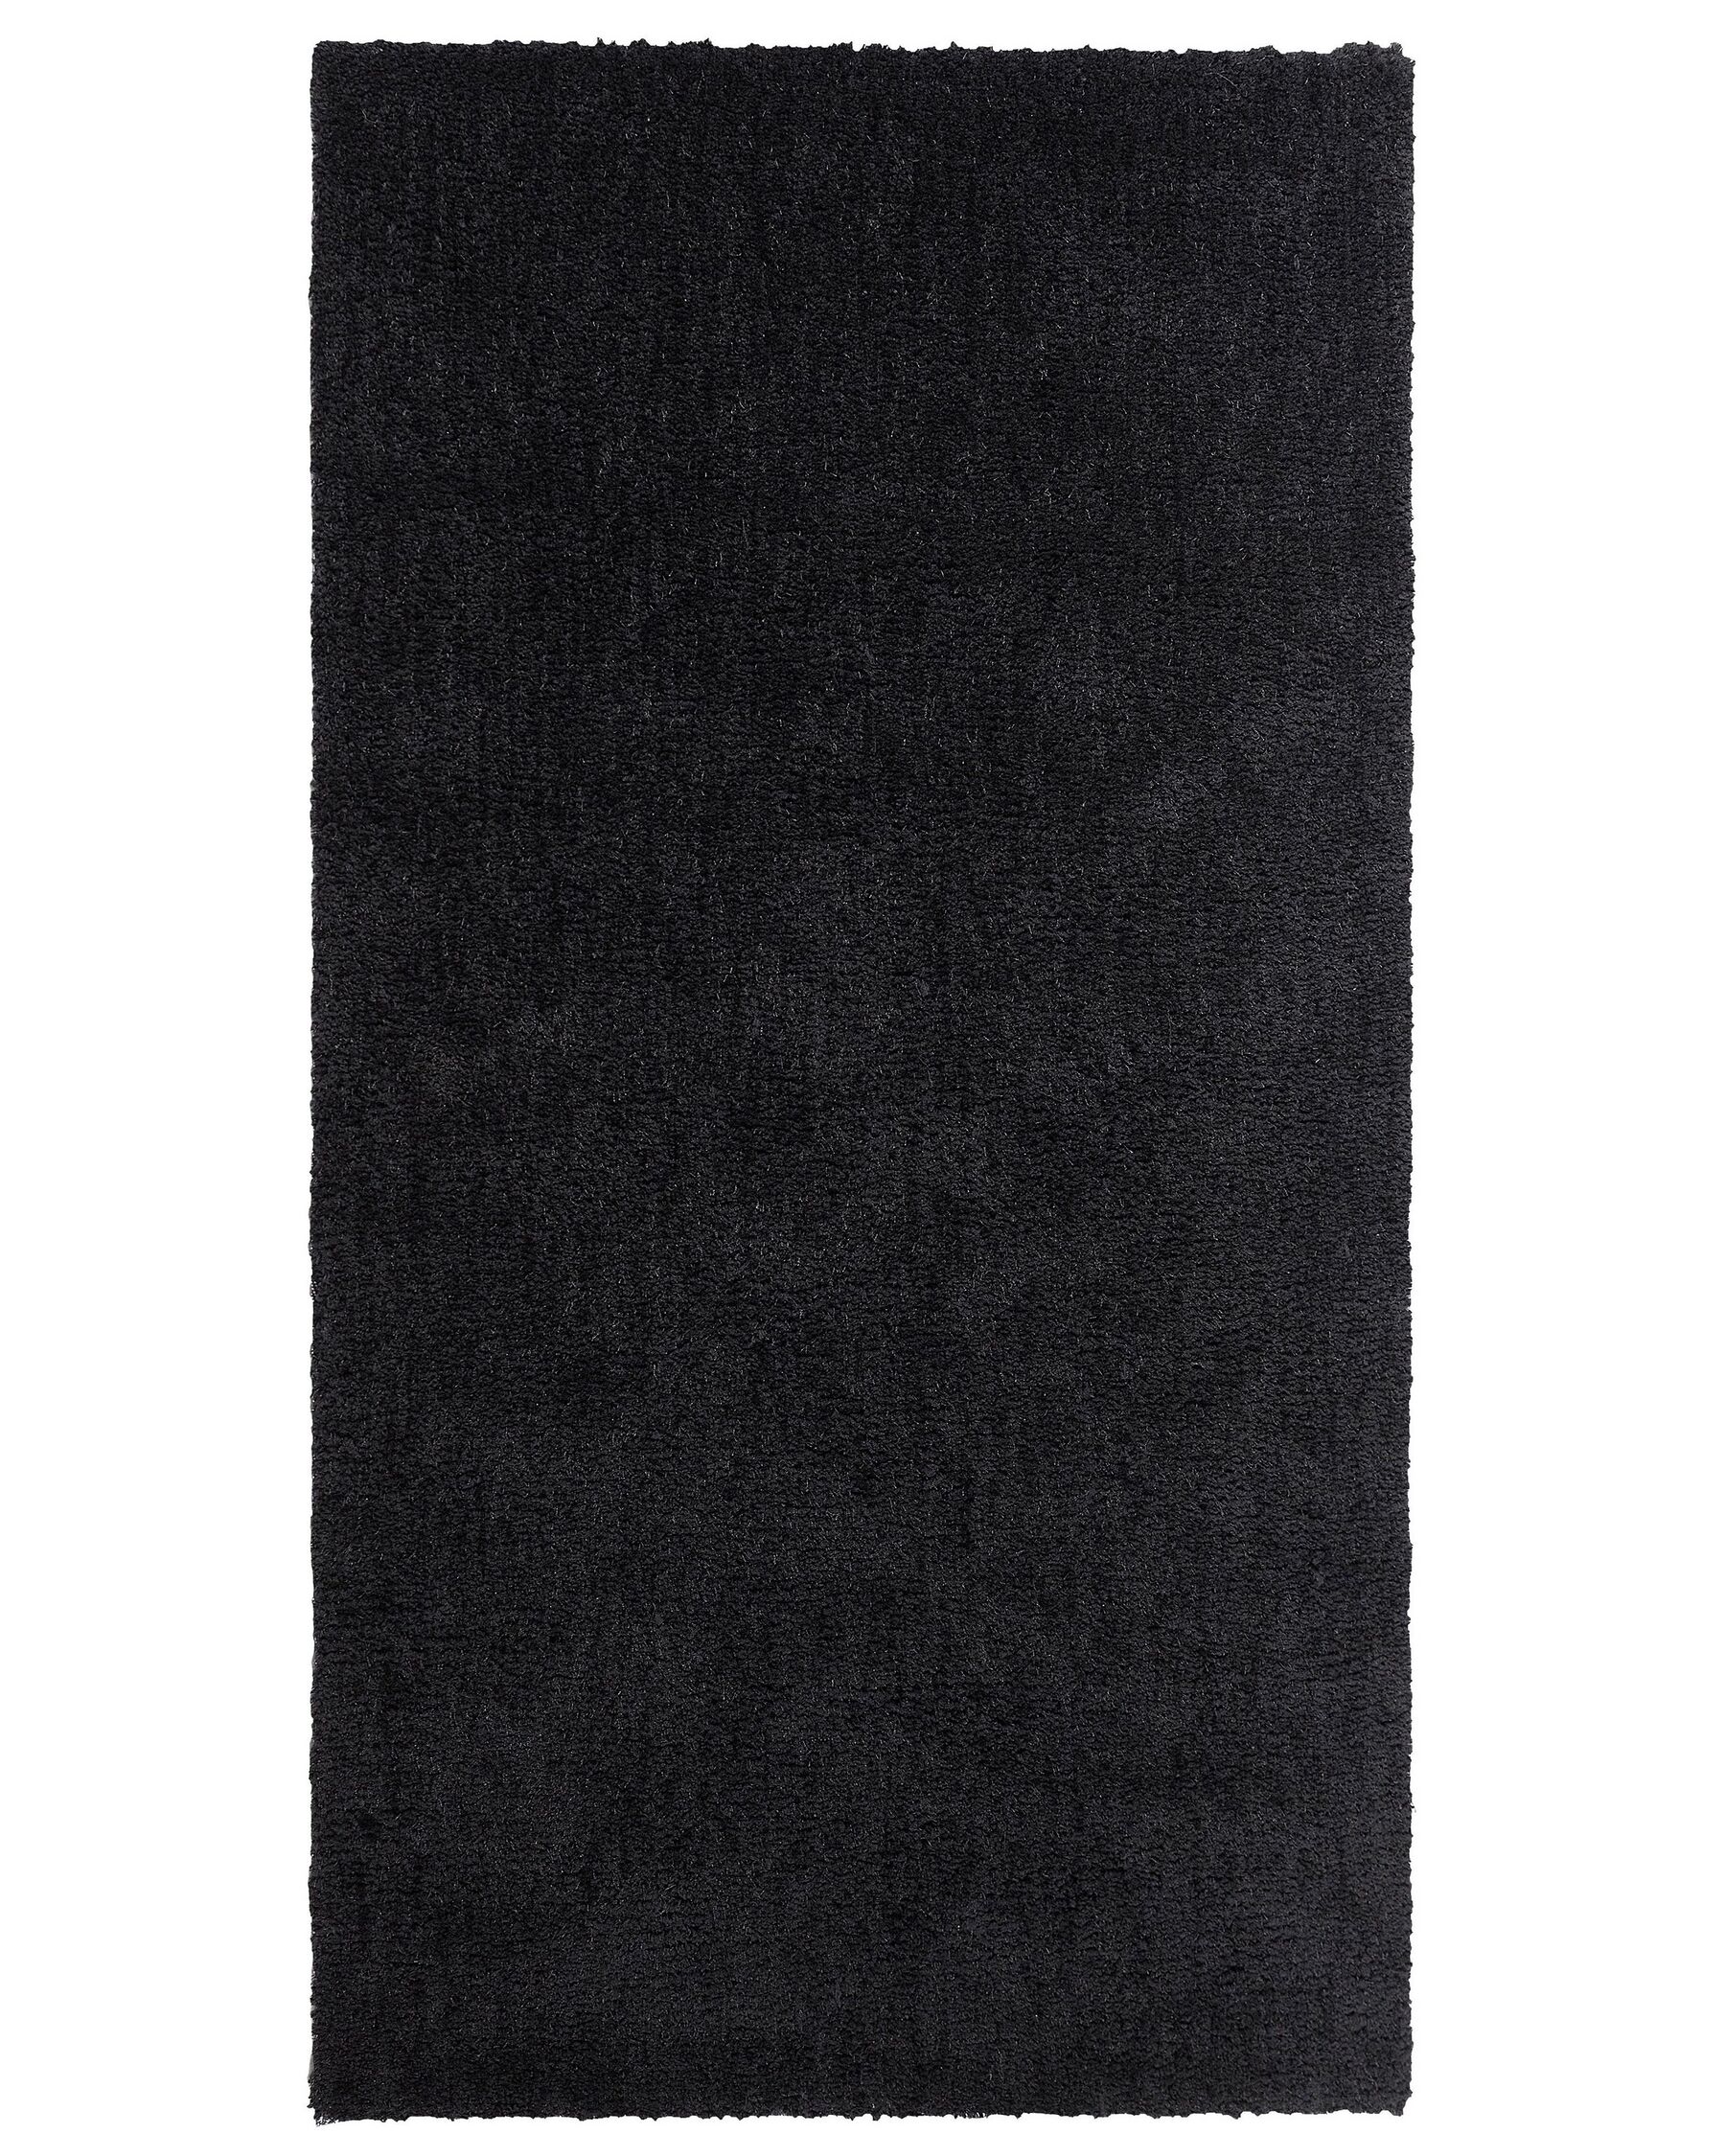 Teppich Lufer rechteckig 80 x 150 cm schwarz getuftet Shaggy Hochflor Demre